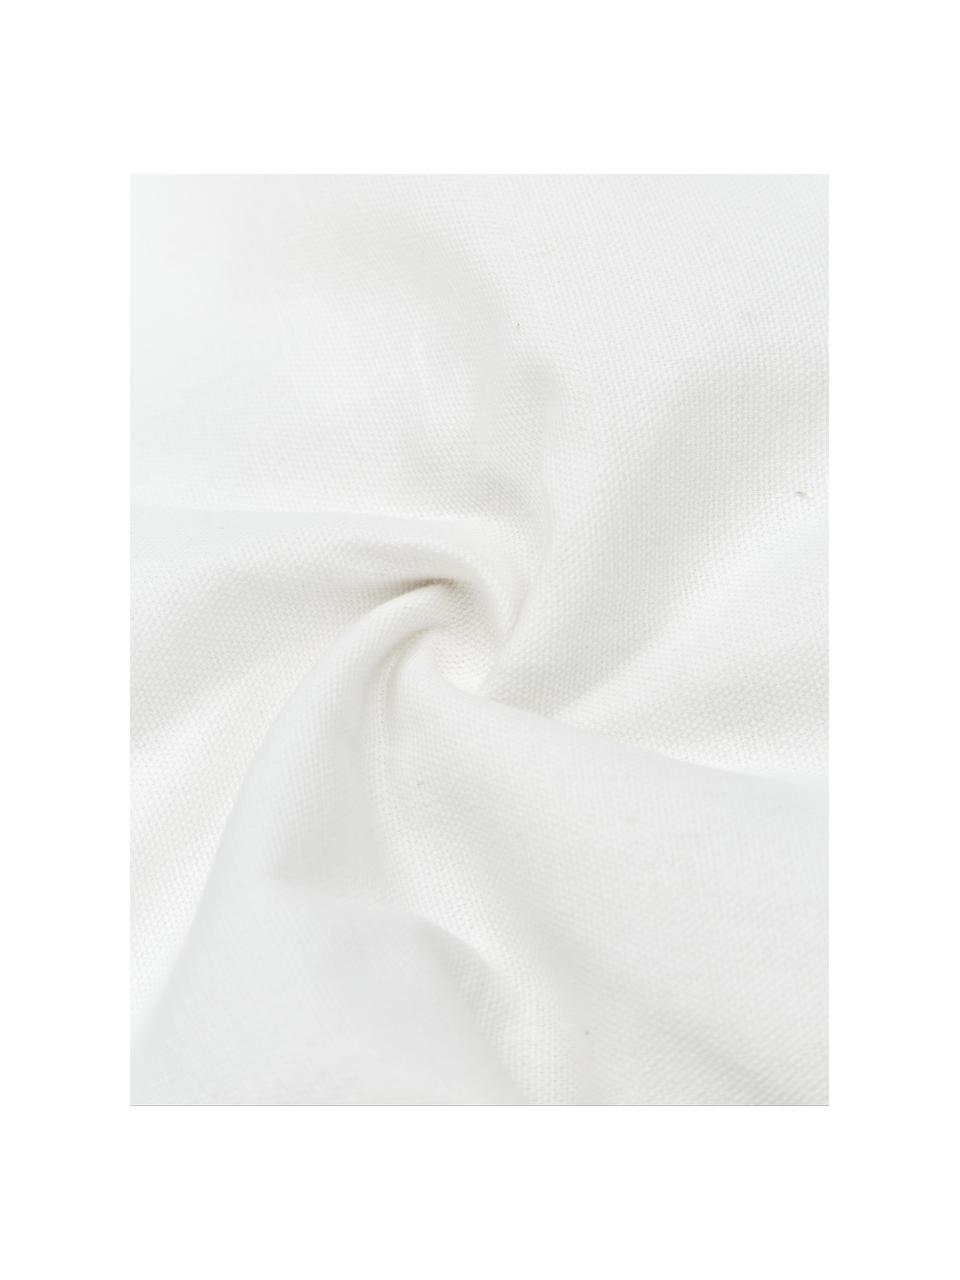 Baumwol-Kissenhülle Viale mit Quasten, 100% Baumwolle, Weiß, Beige, B 40 x L 60 cm